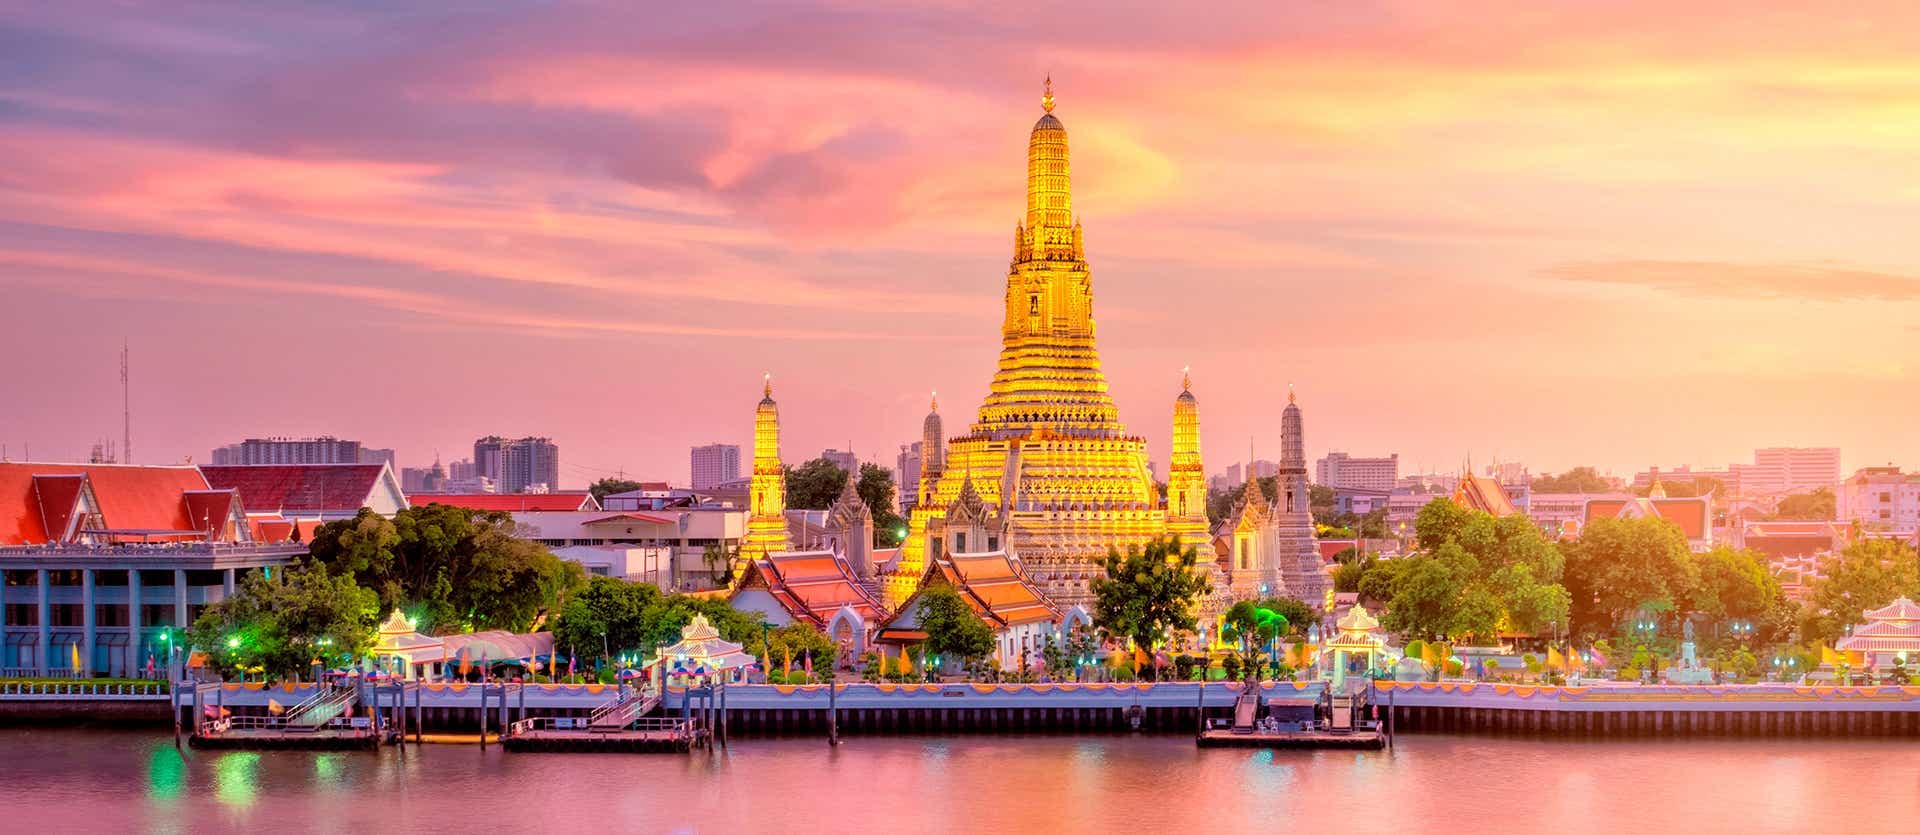 Le temple de Wat Arun <span class="iconos separador"></span> Bangkok <span class="iconos separador"></span> Thaïlande